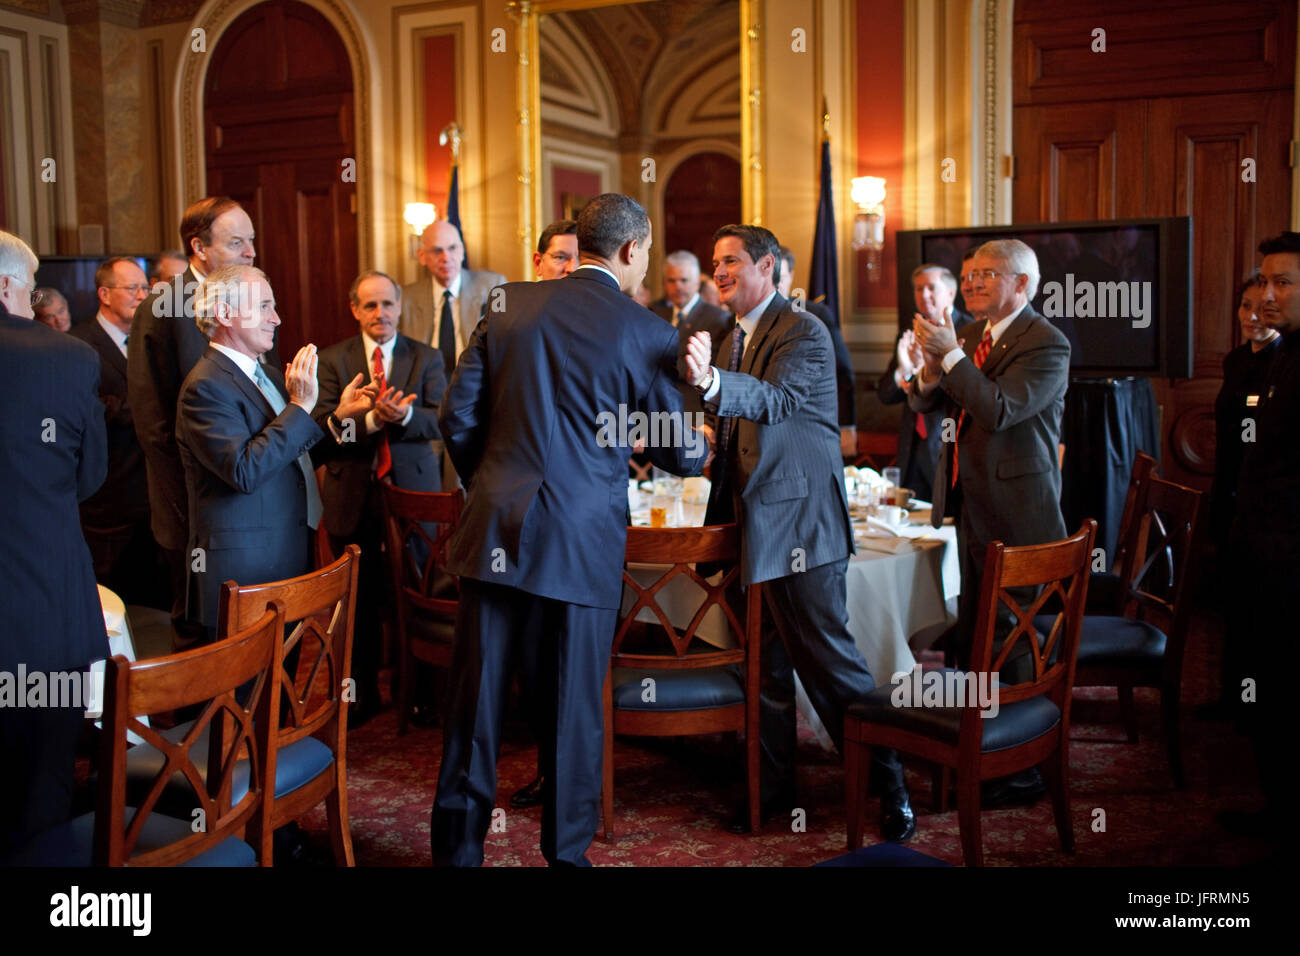 Le président Barack Obama participe à un déjeuner avec les républicains du Sénat sur la colline du Capitole, Washington D.C. 27/1/09. Photo Officiel de la Maison Blanche par Pete Souza Banque D'Images